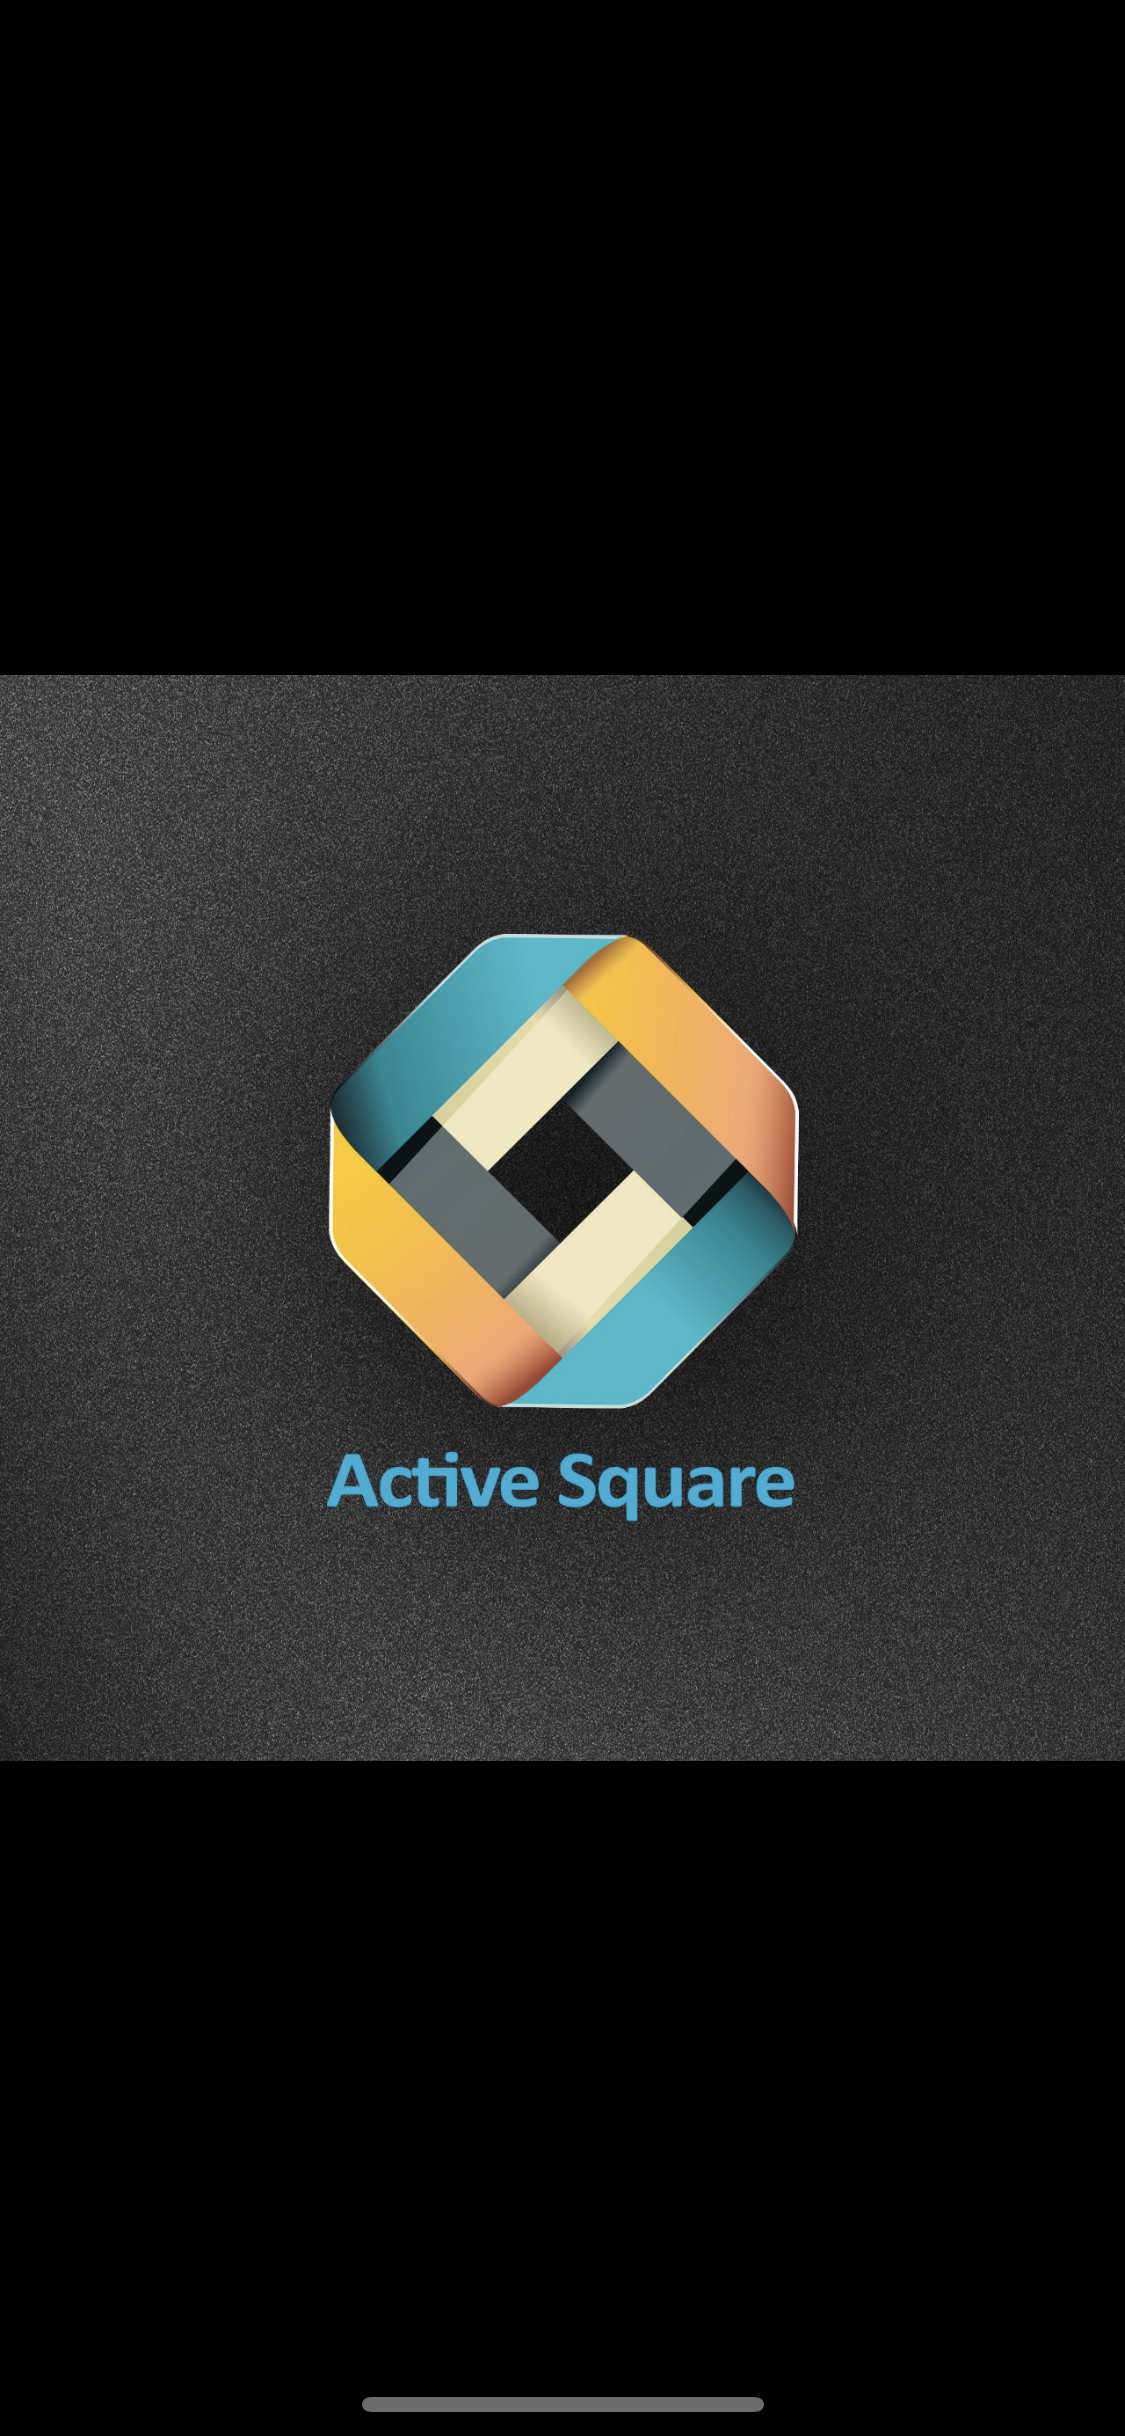 Active Square